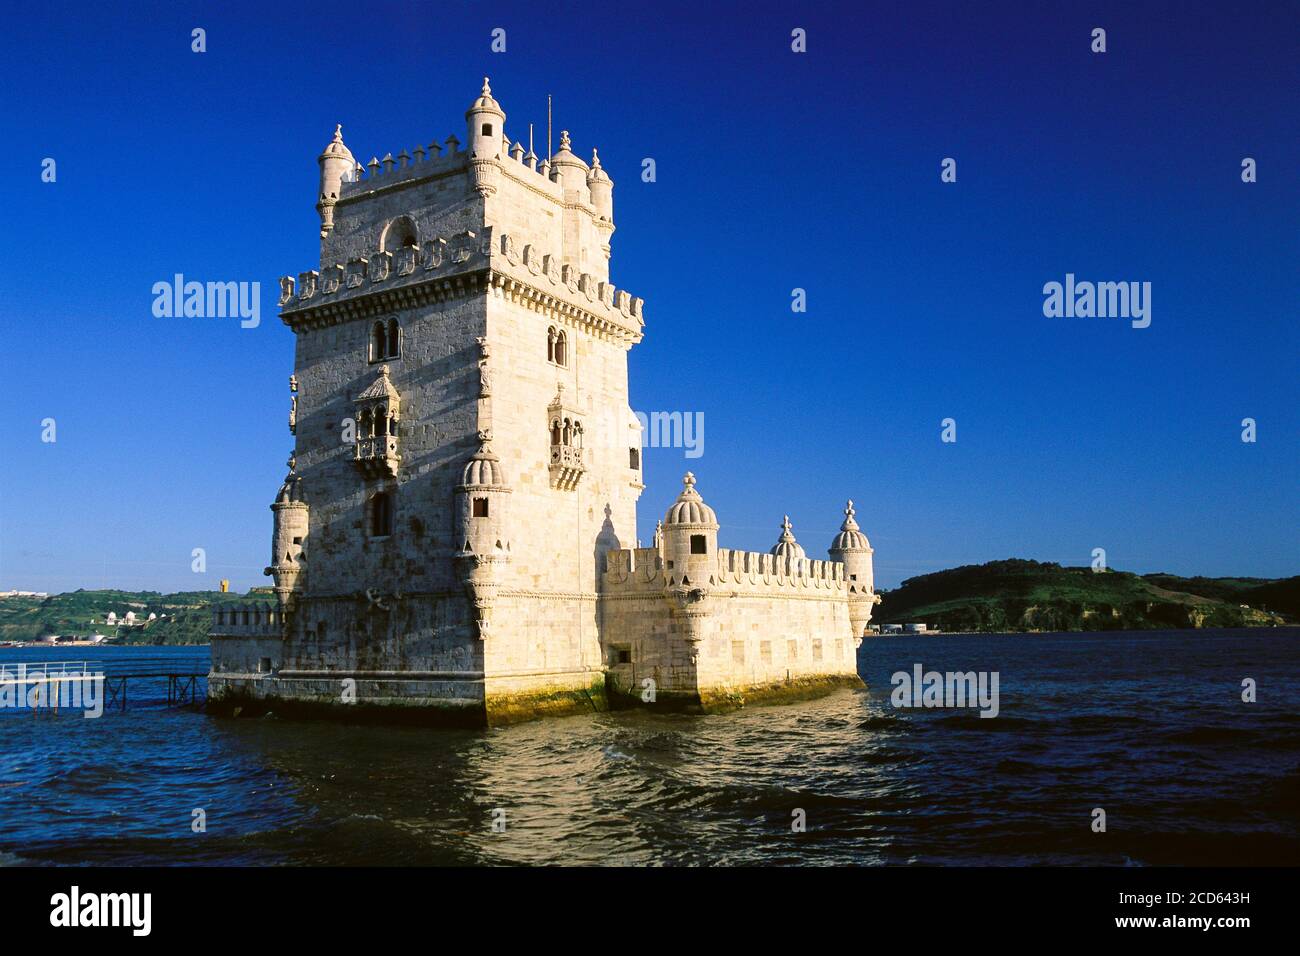 Vue extérieure de la tour Belem, Lisbonne, Portugal Banque D'Images